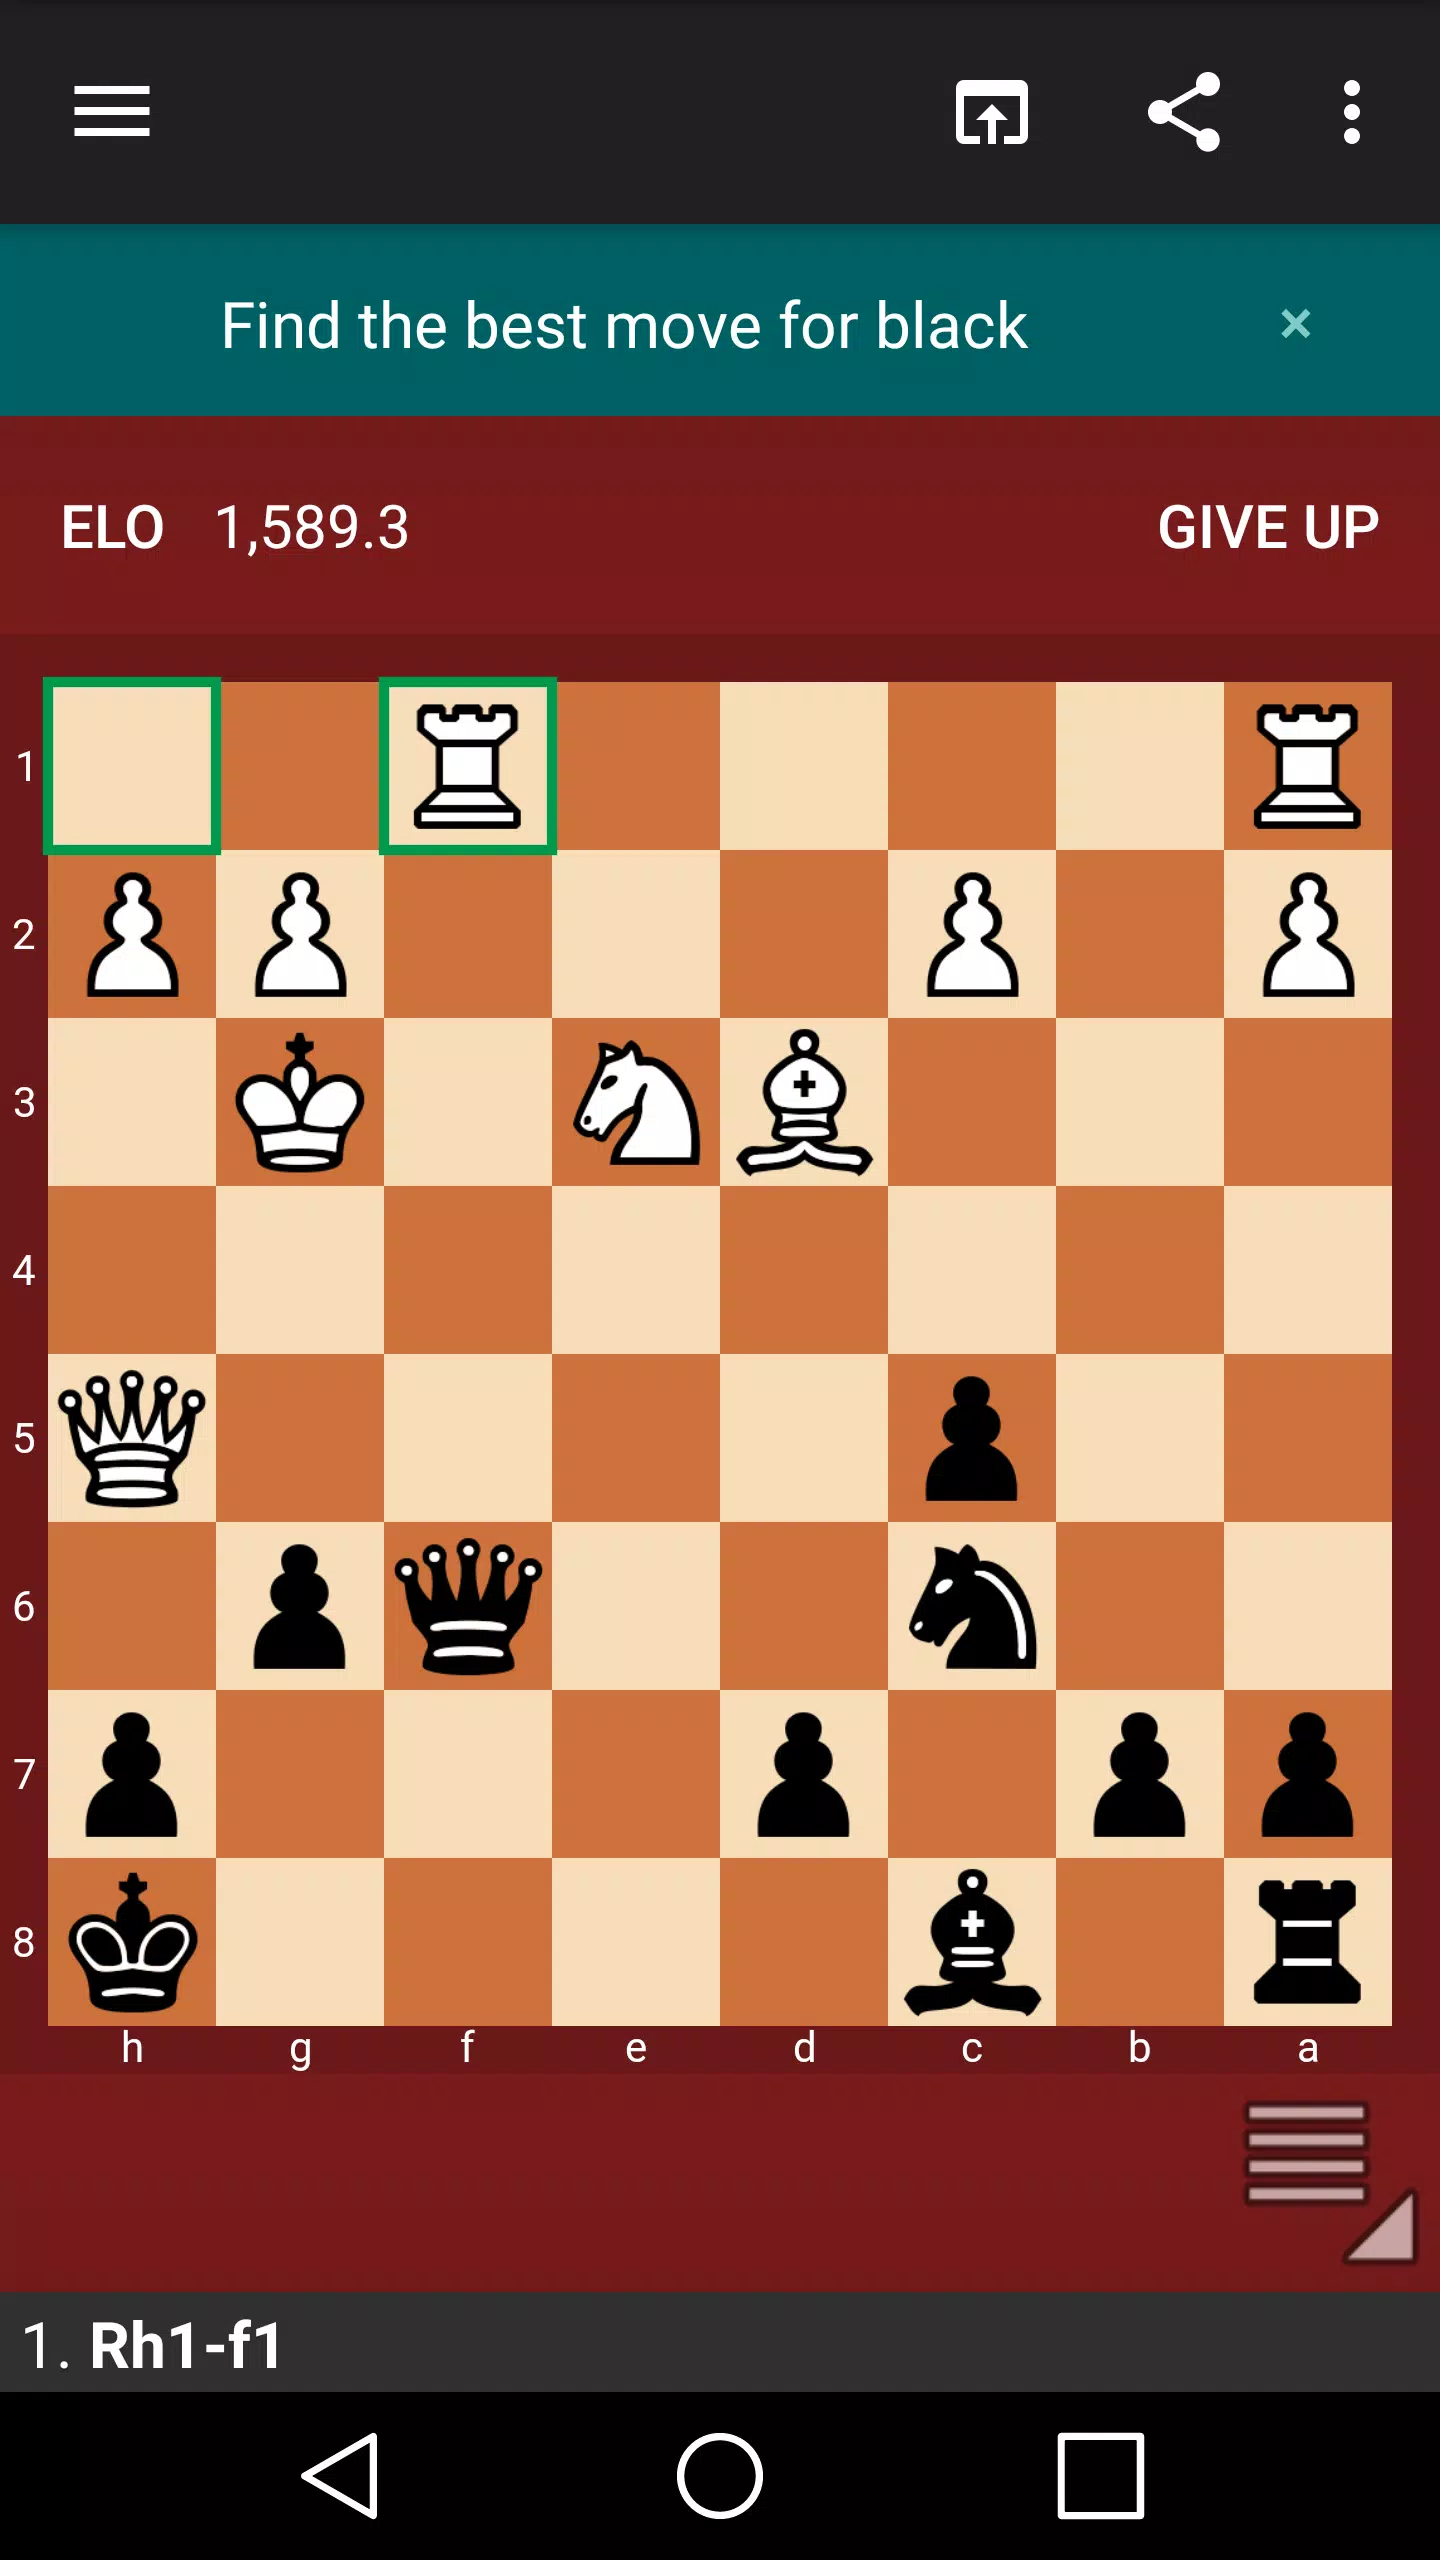 Follow Chess APK v3.6.13 Free Download - APK4Fun